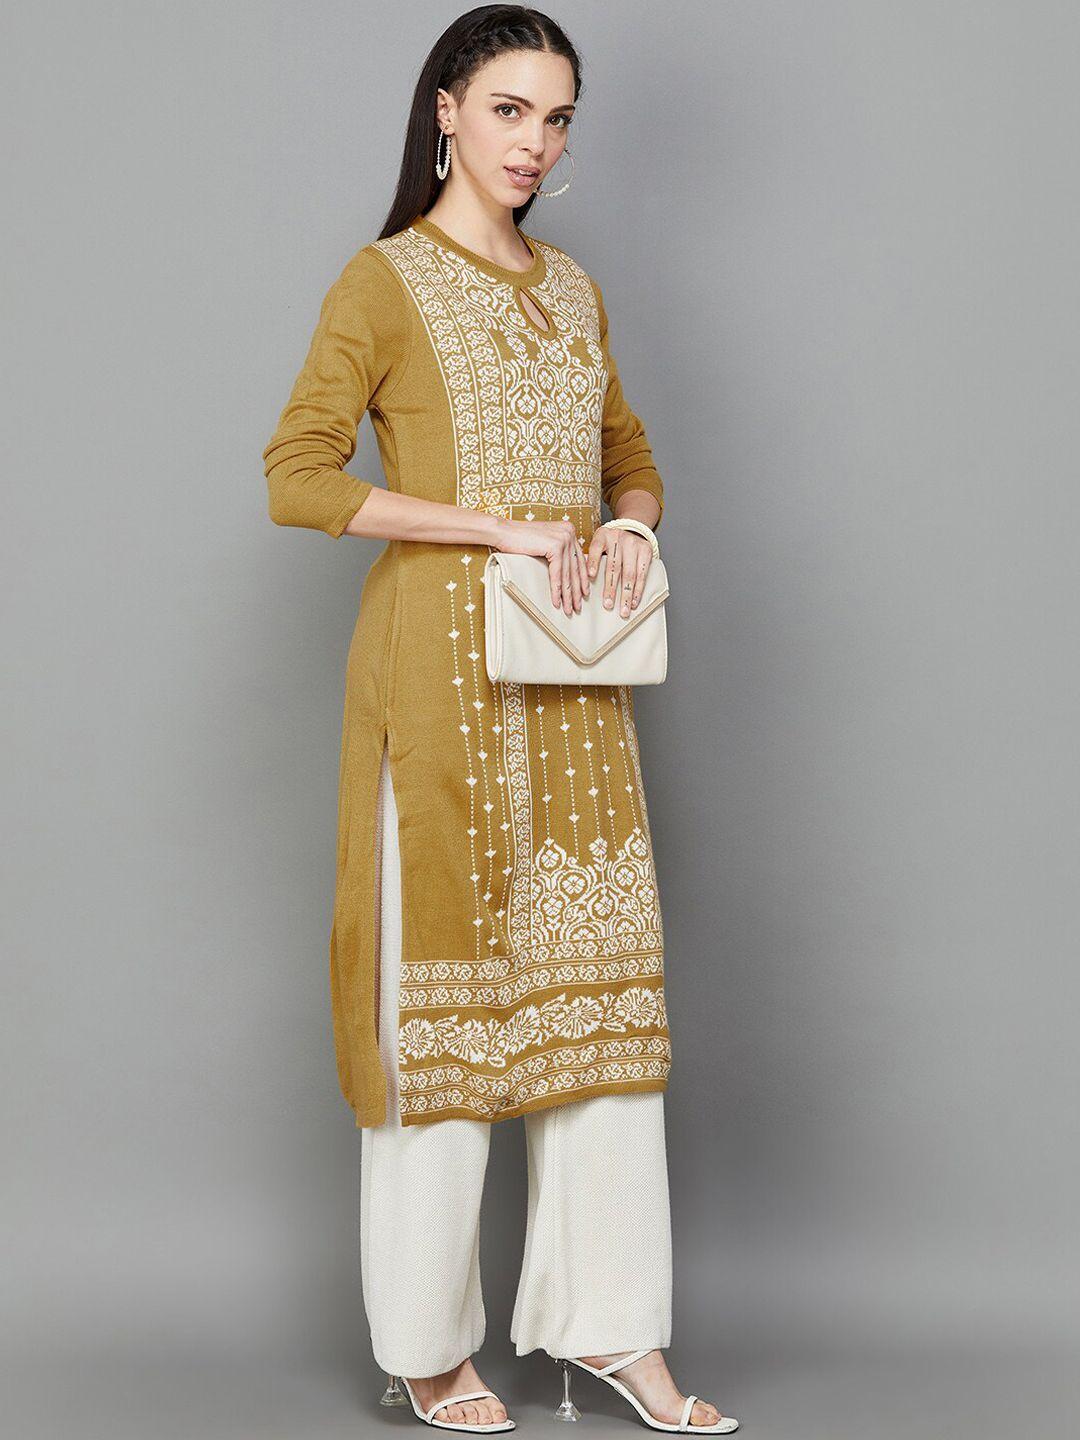 melange by lifestyle ethnic motifs woven design keyhole neck long sleeves acrylic kurta